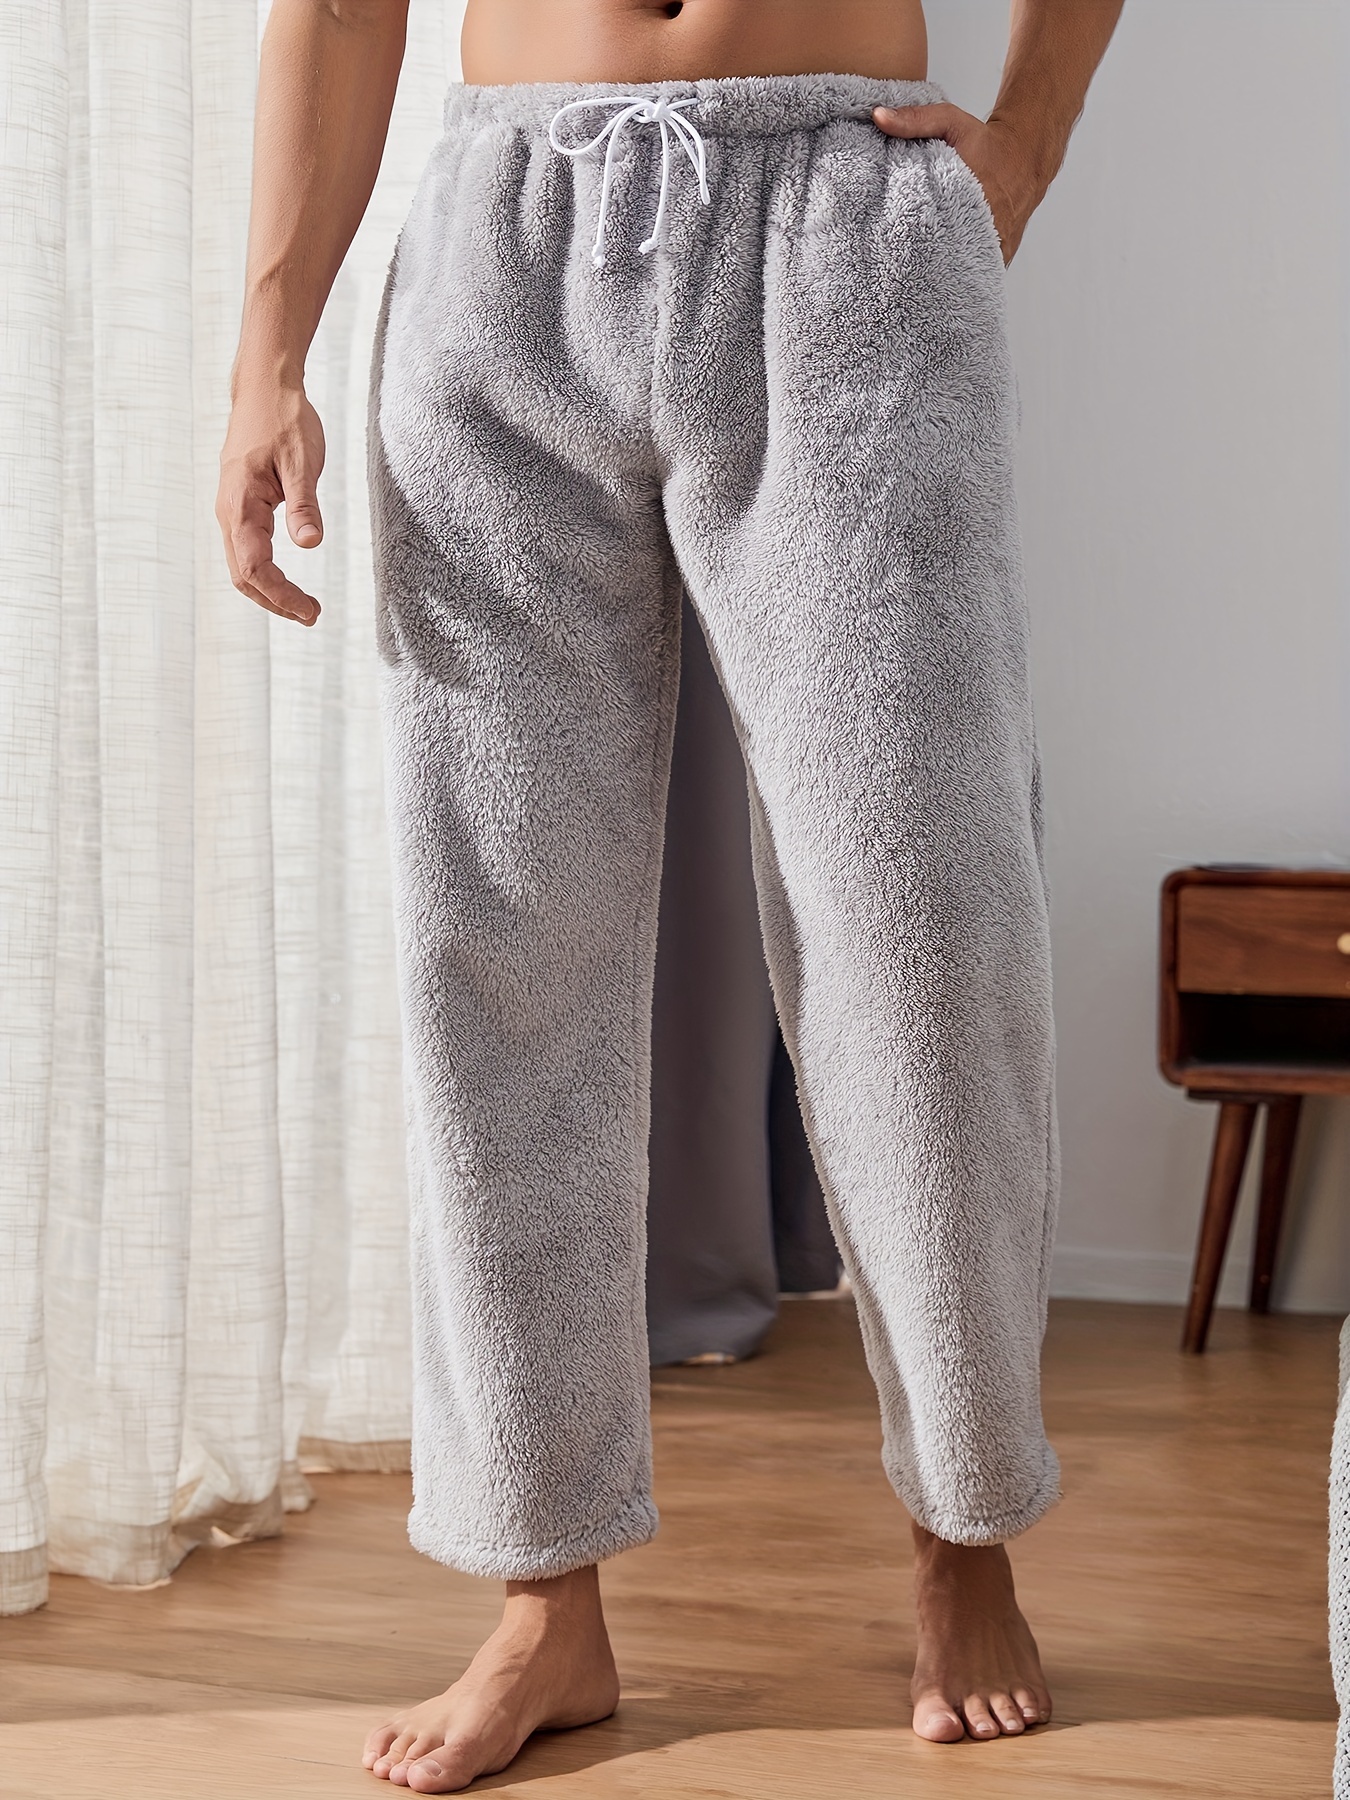 Fluffy Lounge Pajamas, Fluffy Pajama Winter